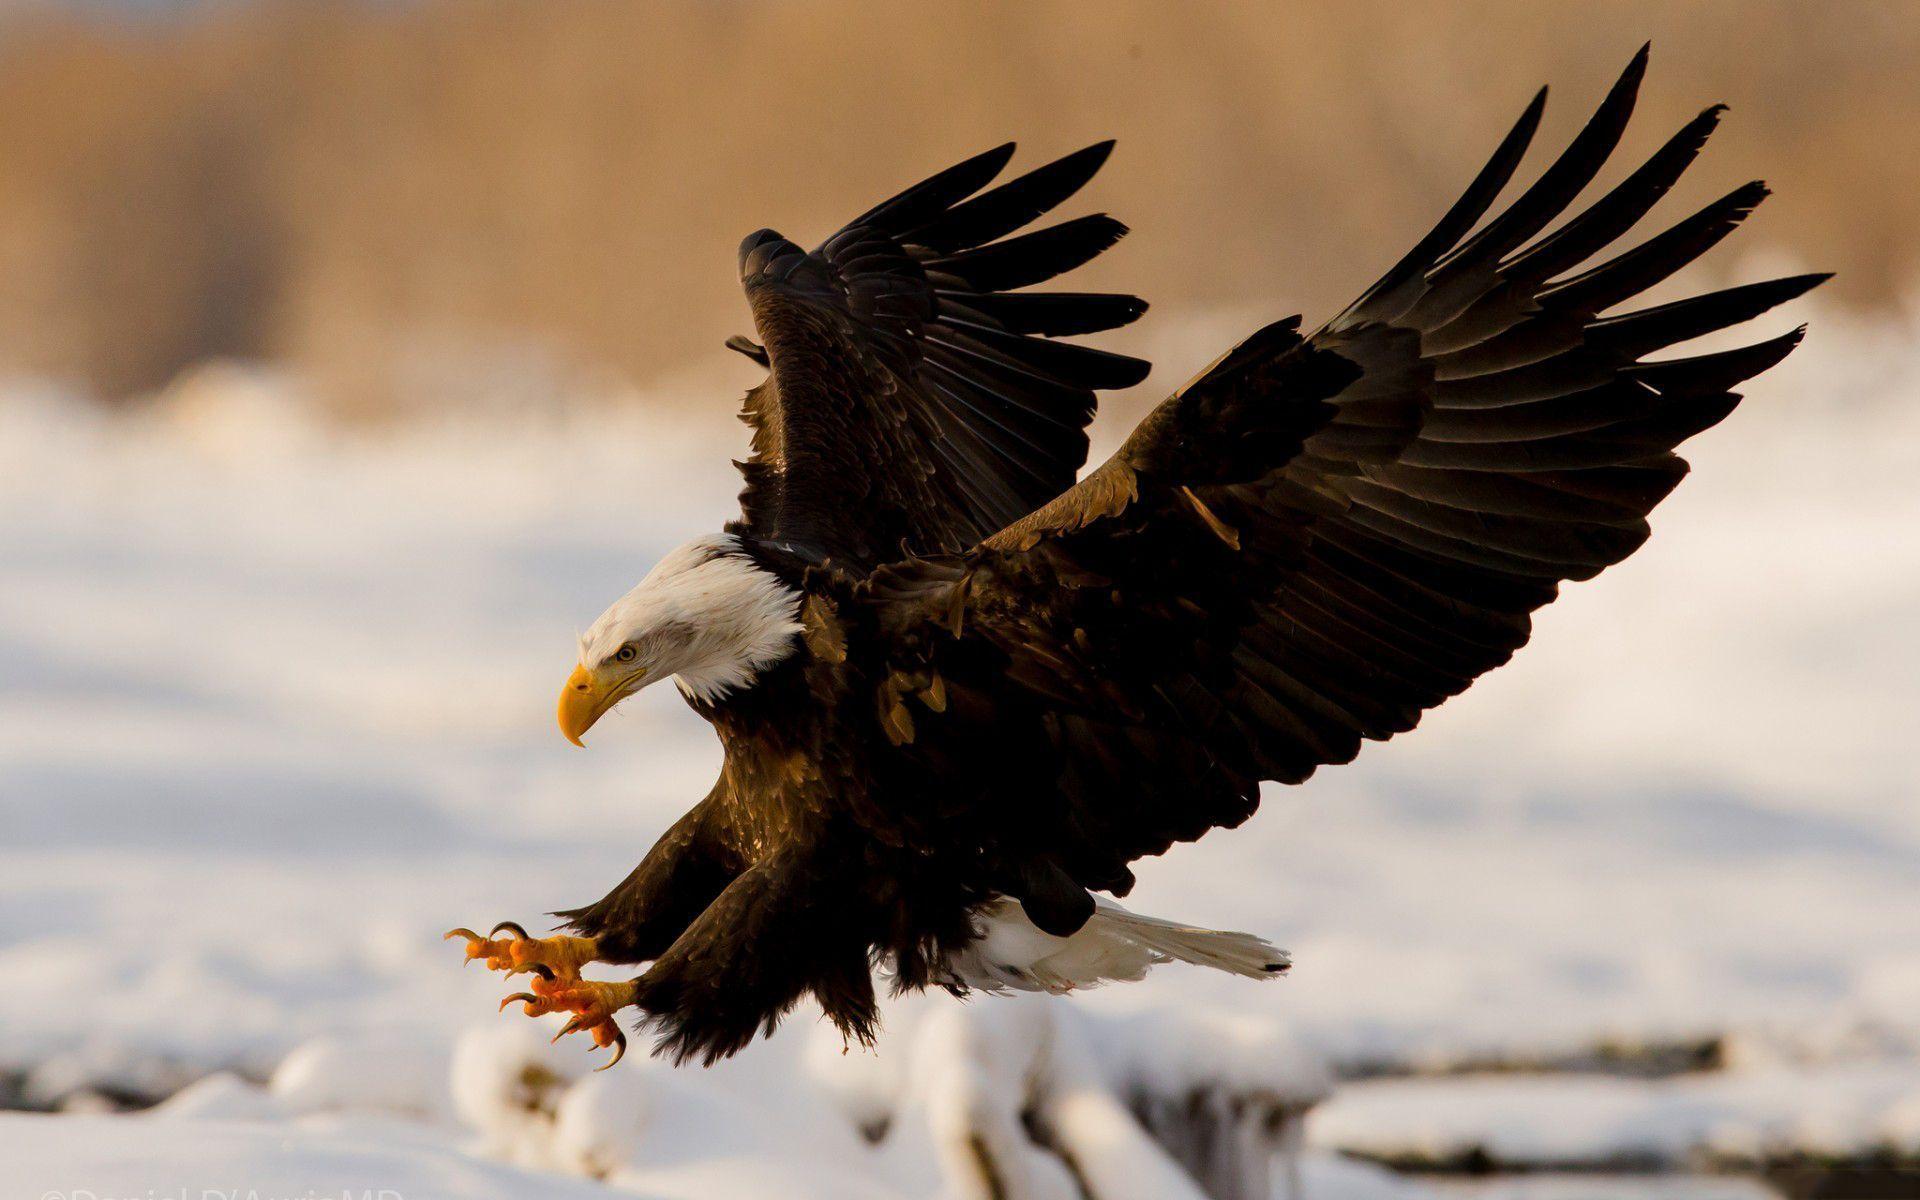 American eagle symbol black and white beautiful bald eagle